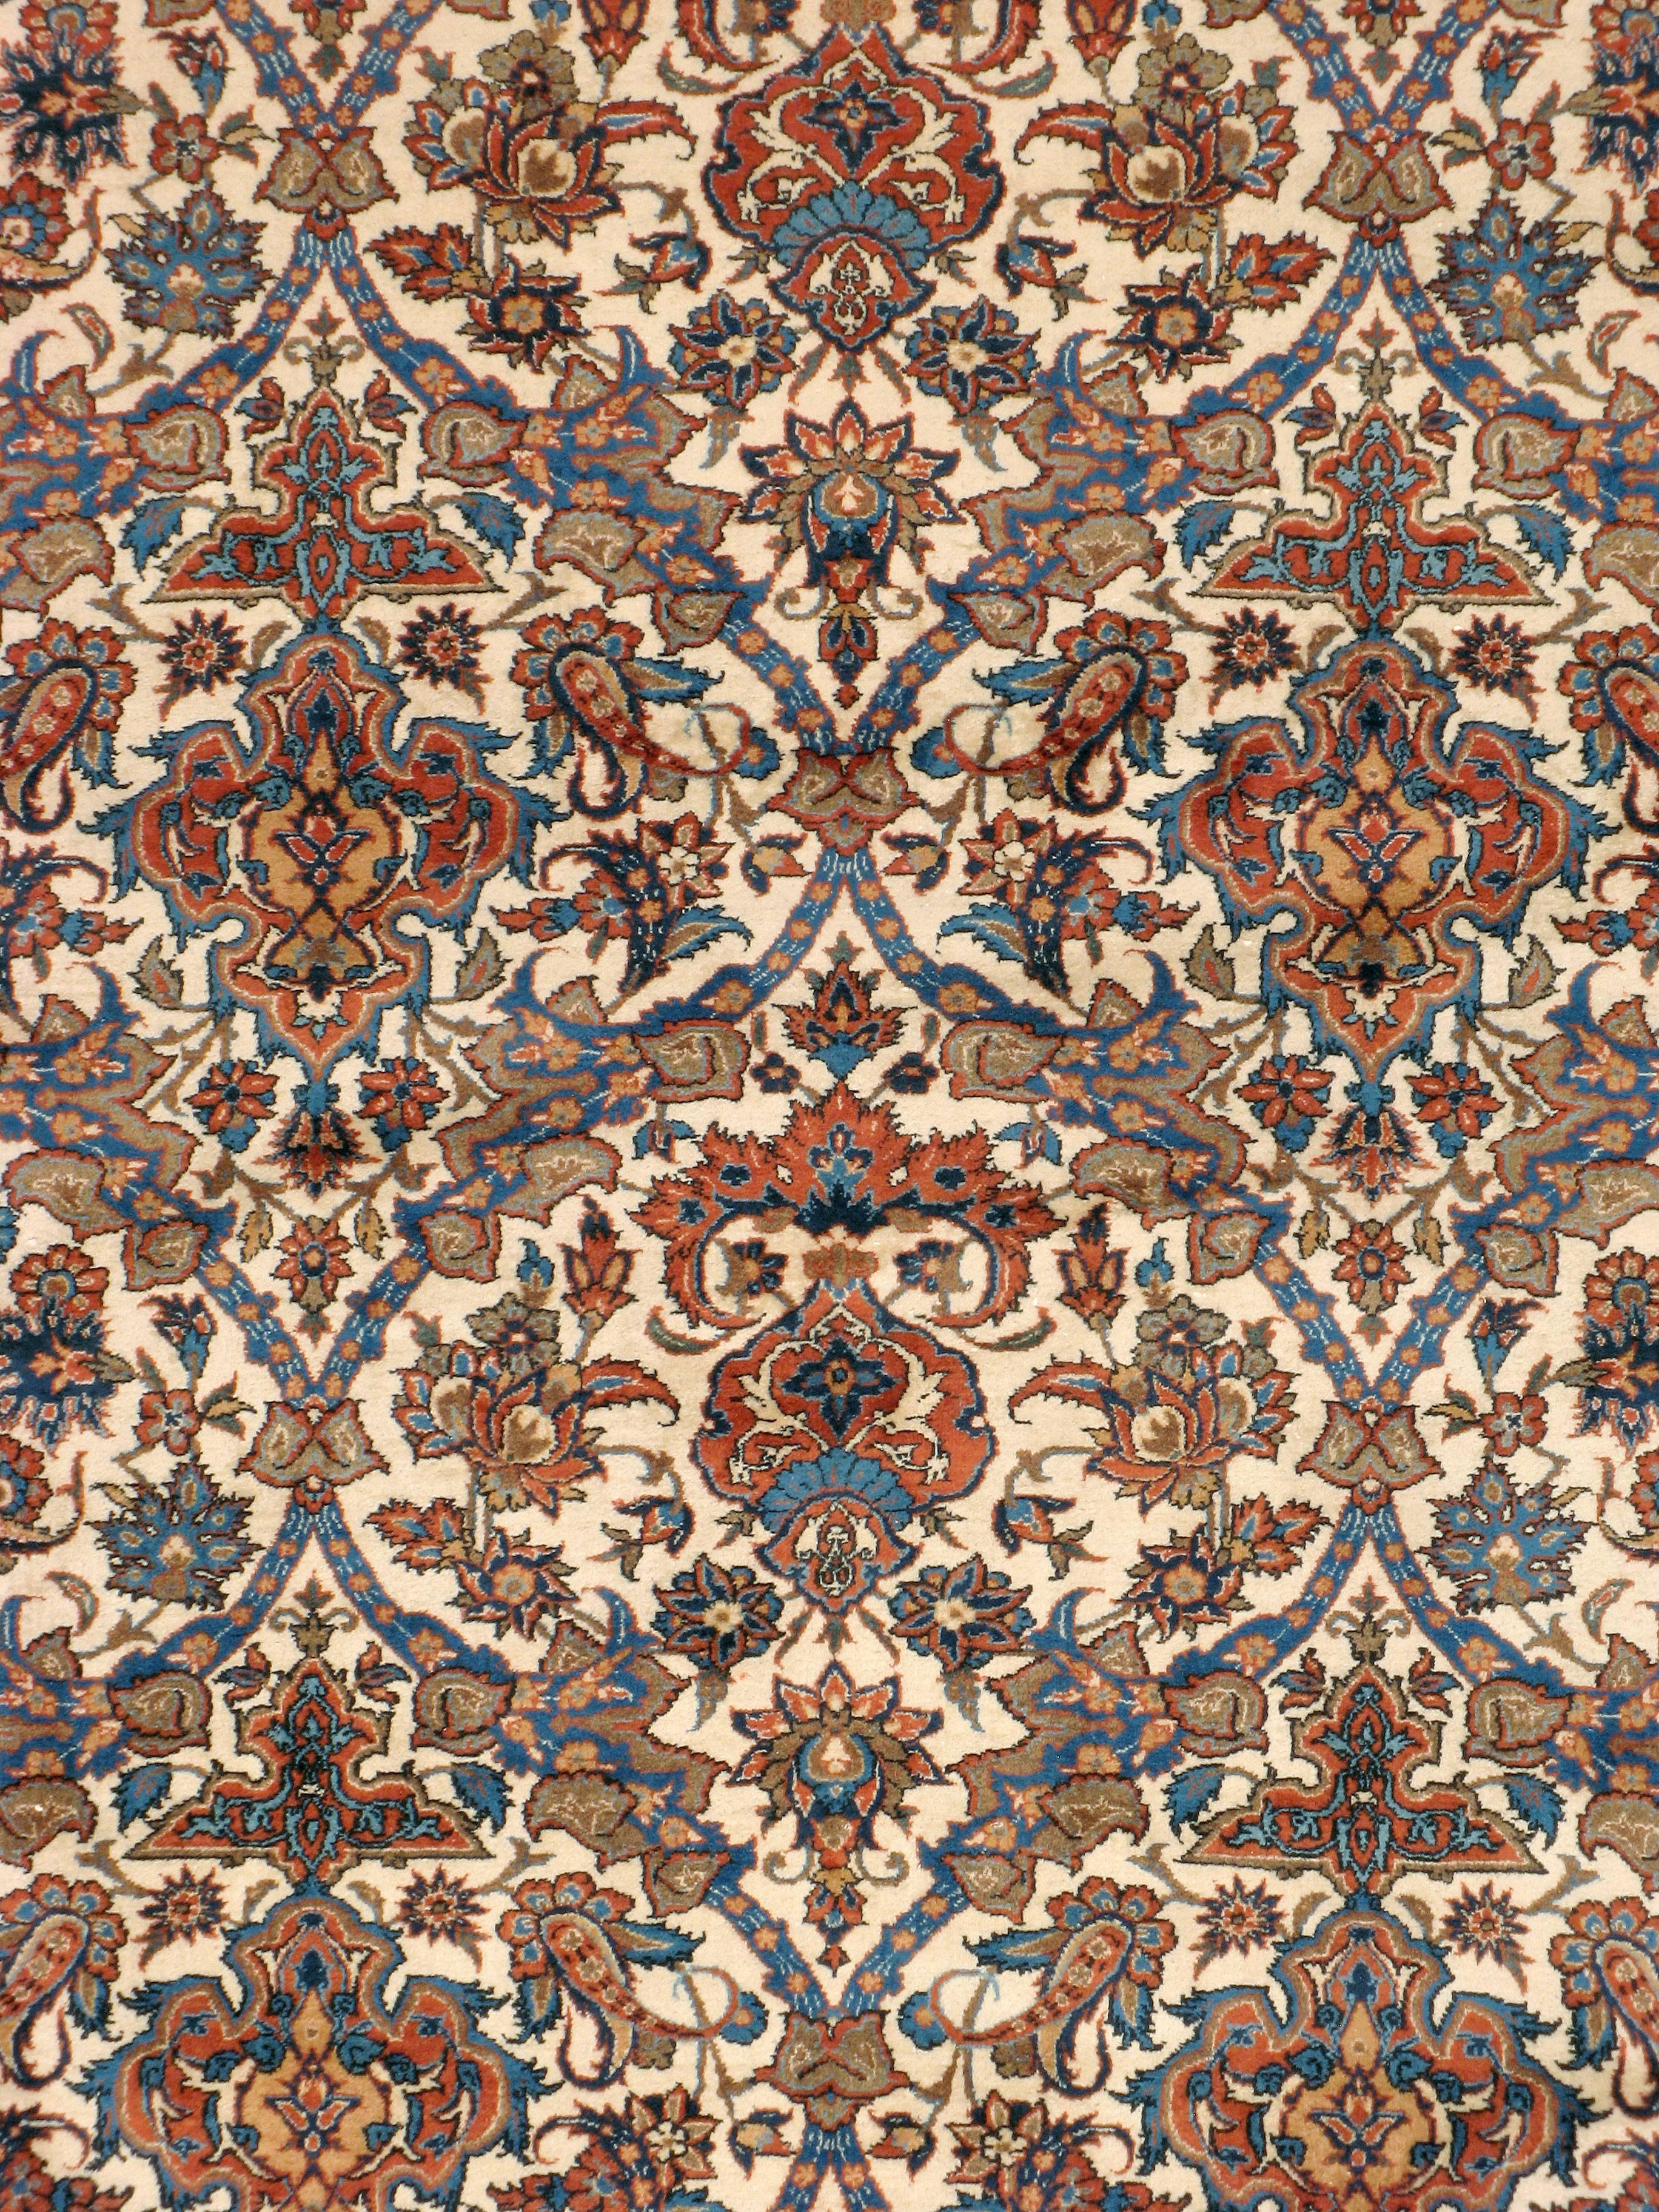 Tapis persan vintage d'Ispahan datant du milieu du 20e siècle avec un motif complexe sur toute la surface. Le motif est symétrique dans un sens, avec des teintes bleues, rouges et orange sur un fond ivoire, bordé d'un motif complexe de vigne et de